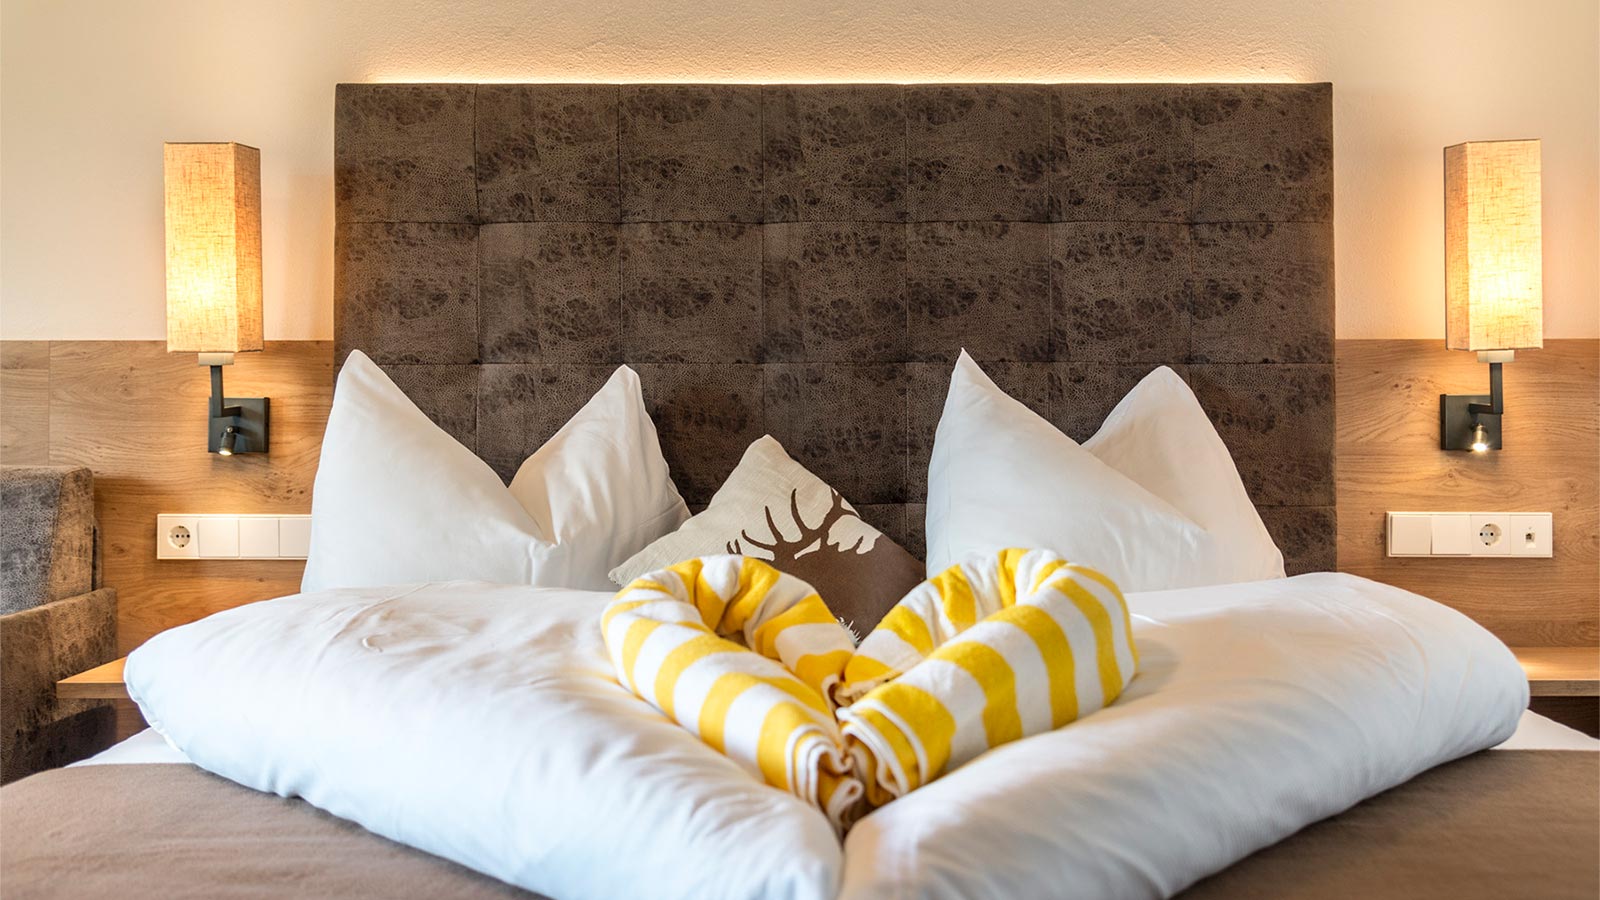 ein schön dekoriertes Bett im Hotel Alpenfrieden, die Bettwäsche ist in Herzform gefaltet